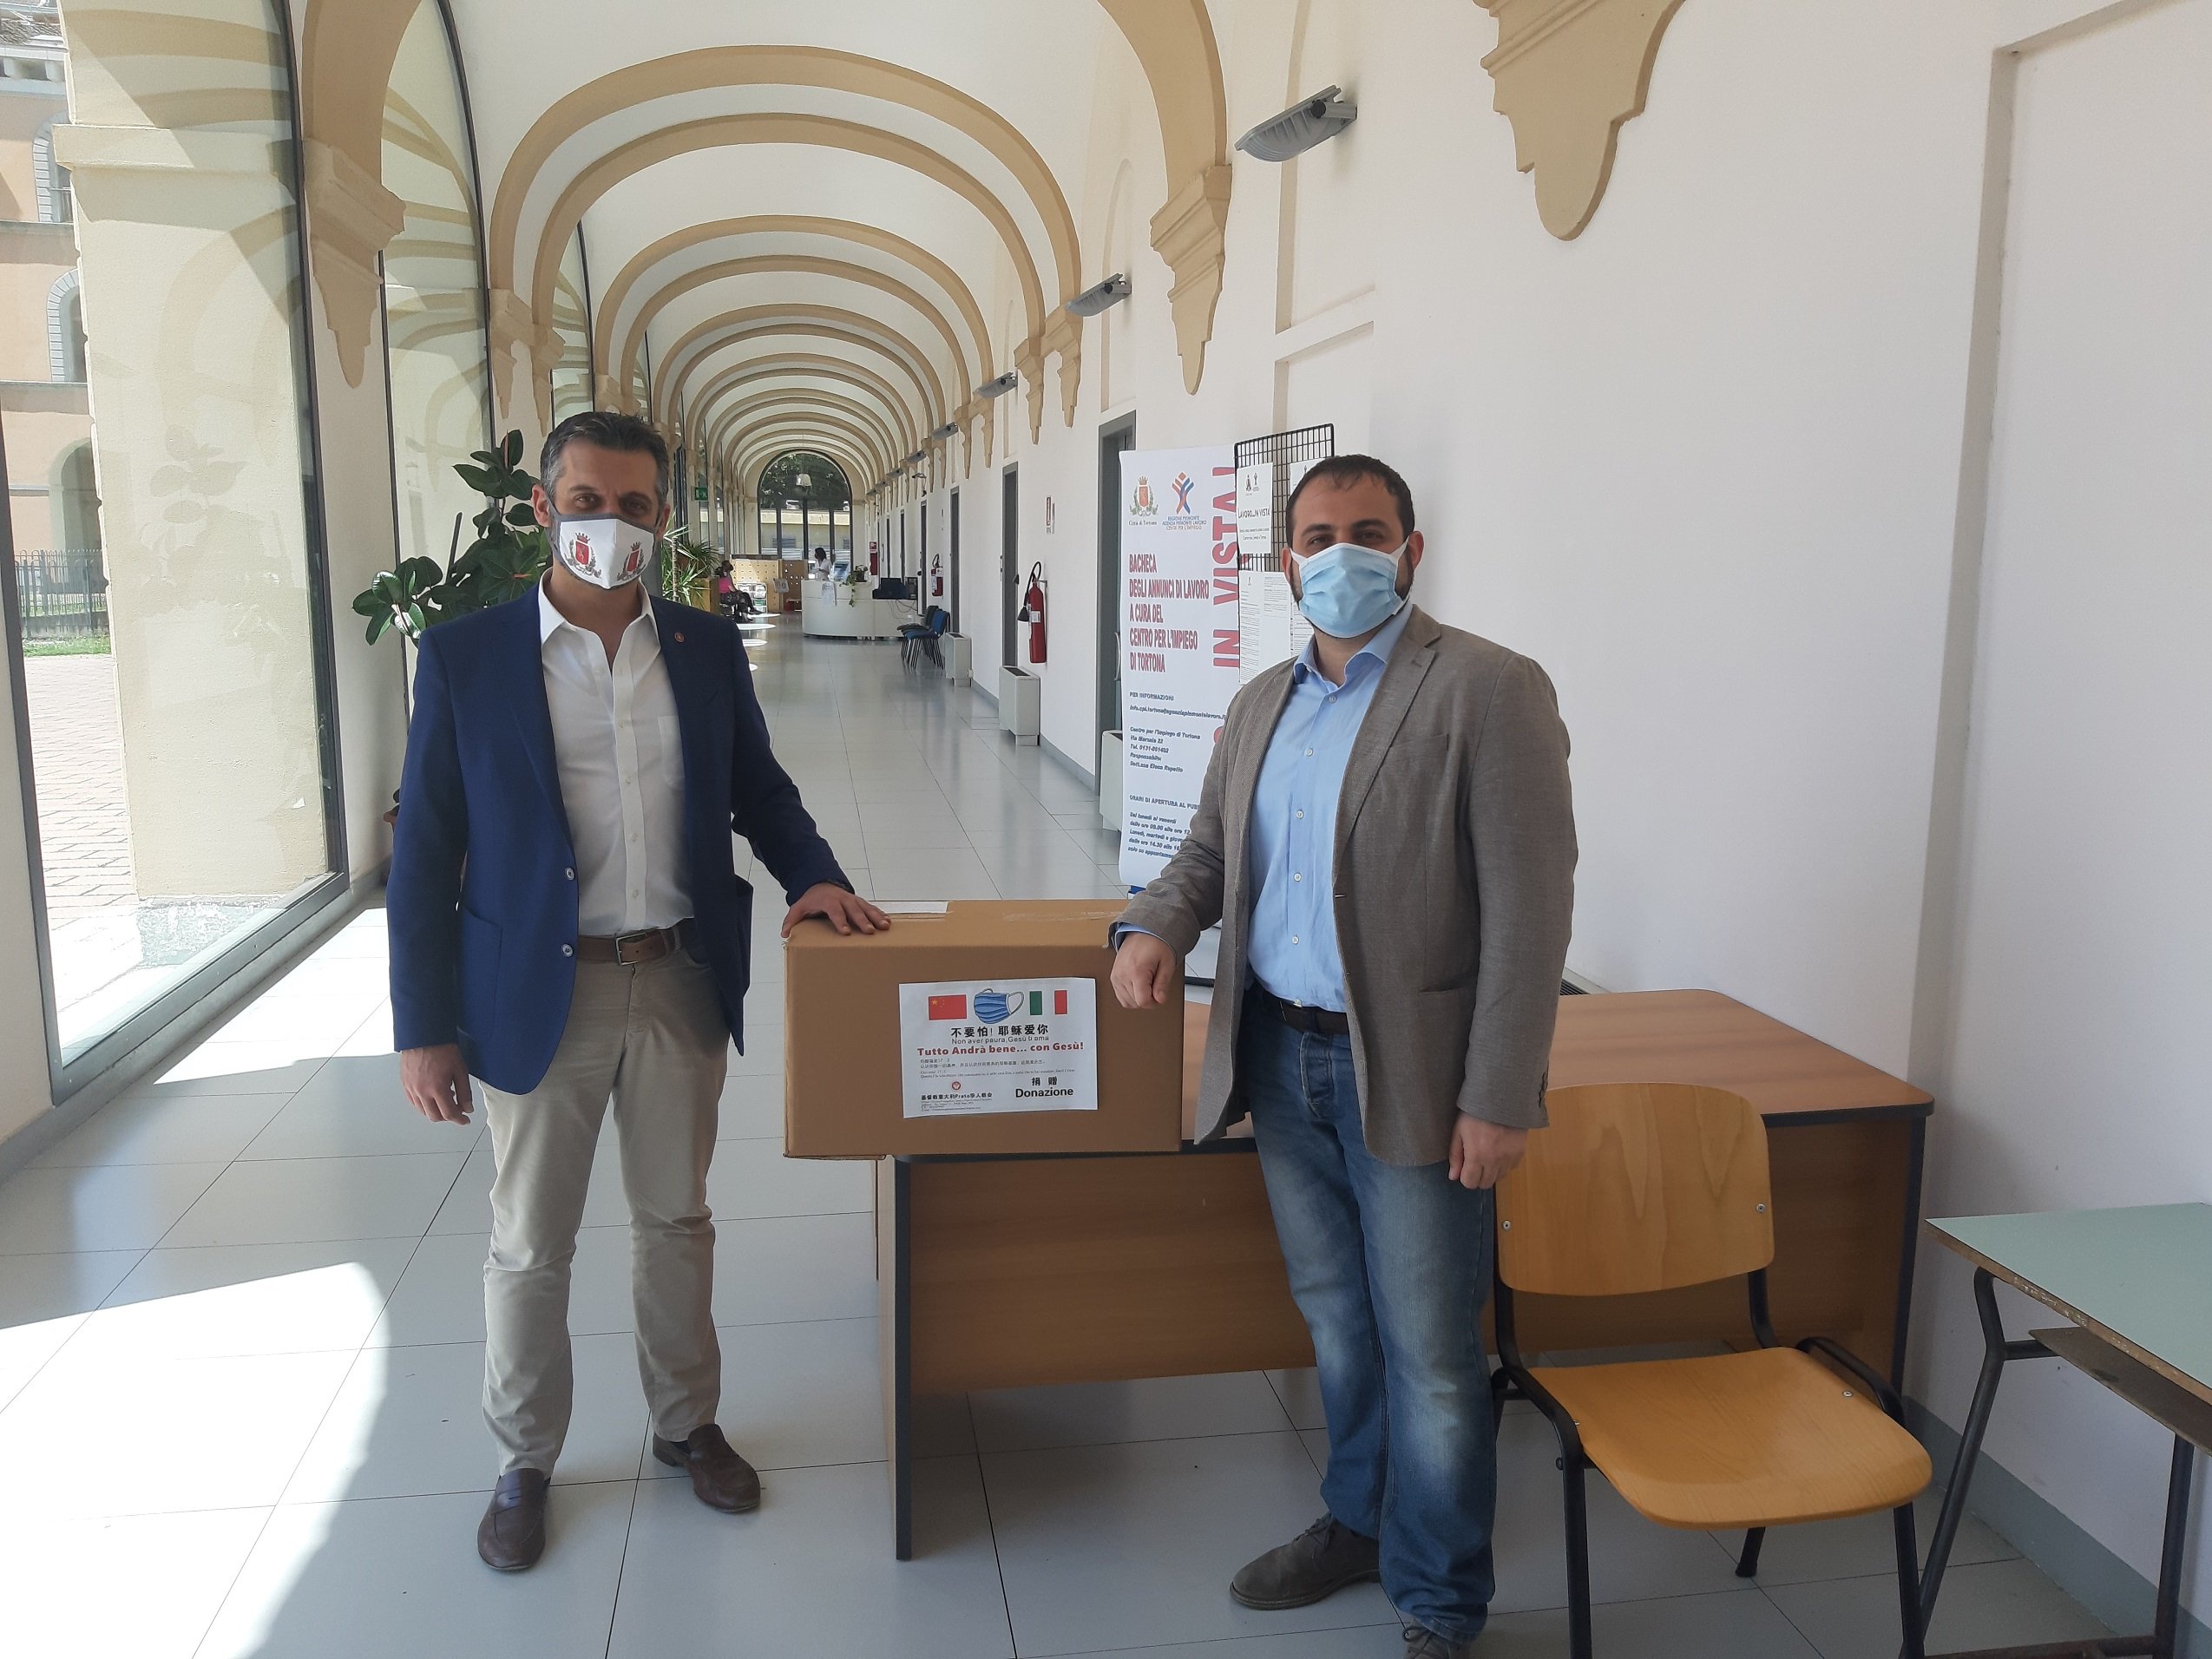 A Tortona la Chiesa Evangelica dona 500 mascherine chirurgiche